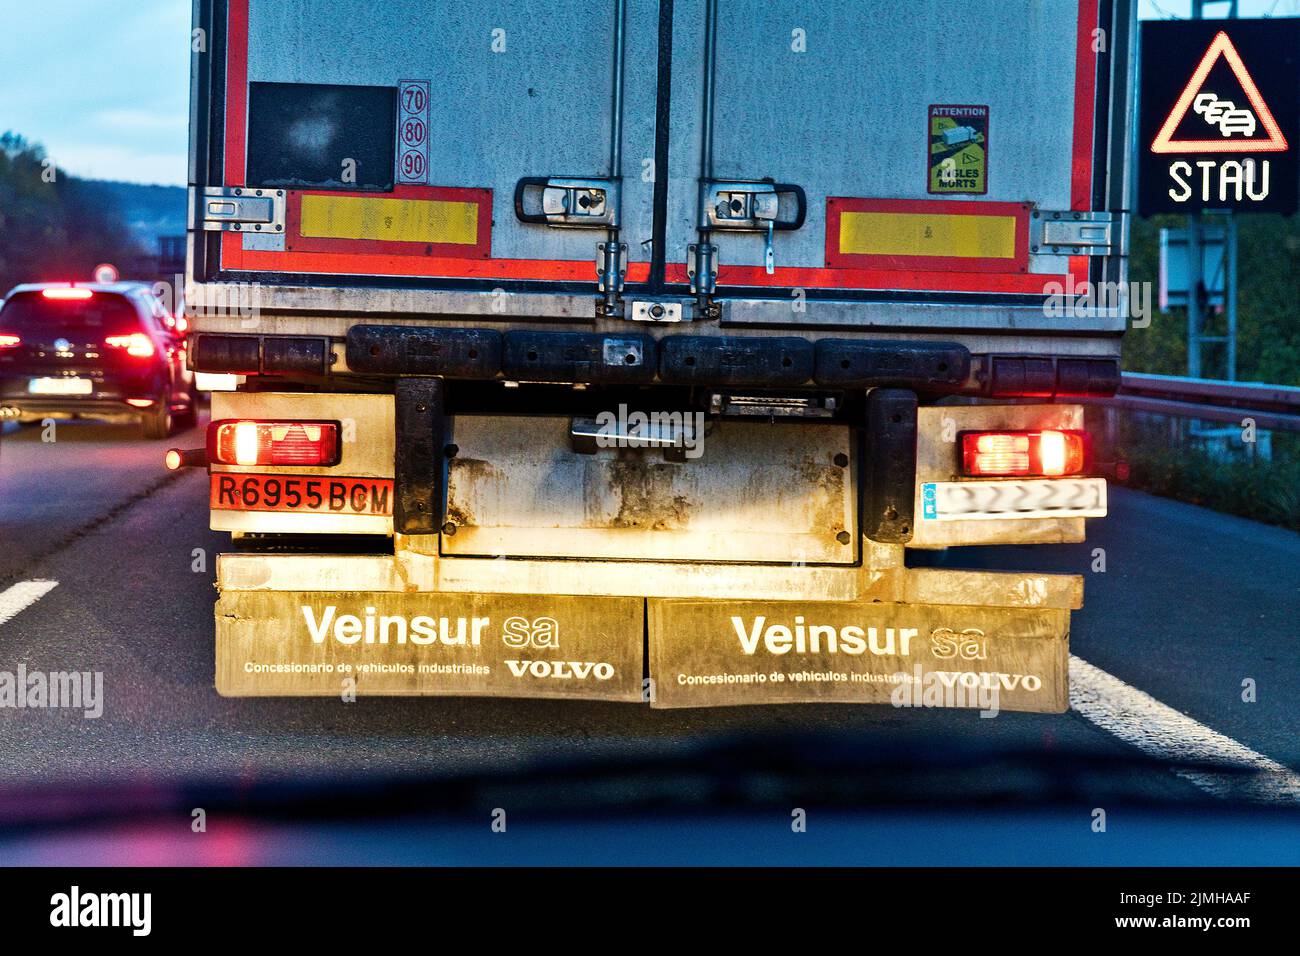 Fermeture complète sur l'autoroute A1, vue de la voiture, Wuppertal, Rhénanie-du-Nord-Westphalie, Allemagne Banque D'Images